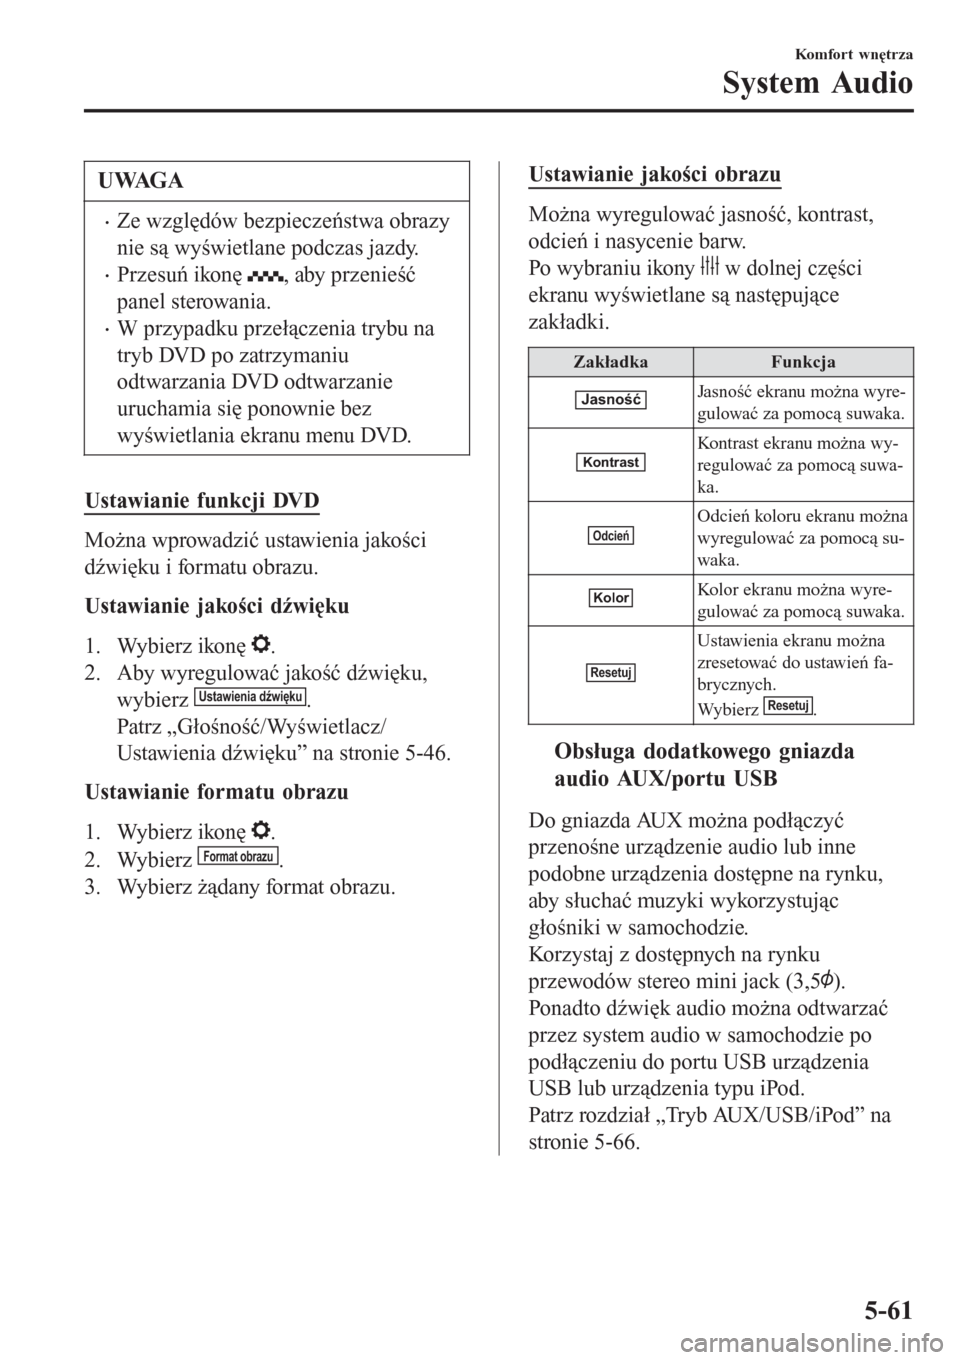 MAZDA MODEL CX-3 2015  Instrukcja Obsługi (in Polish) UWAGA
•Ze względów bezpieczeństwa obrazy
nie są wyświetlane podczas jazdy.
•Przesuń ikonę , aby przenieść
panel sterowania.
•W przypadku przełączenia trybu na
tryb DVD po zatrzymaniu
